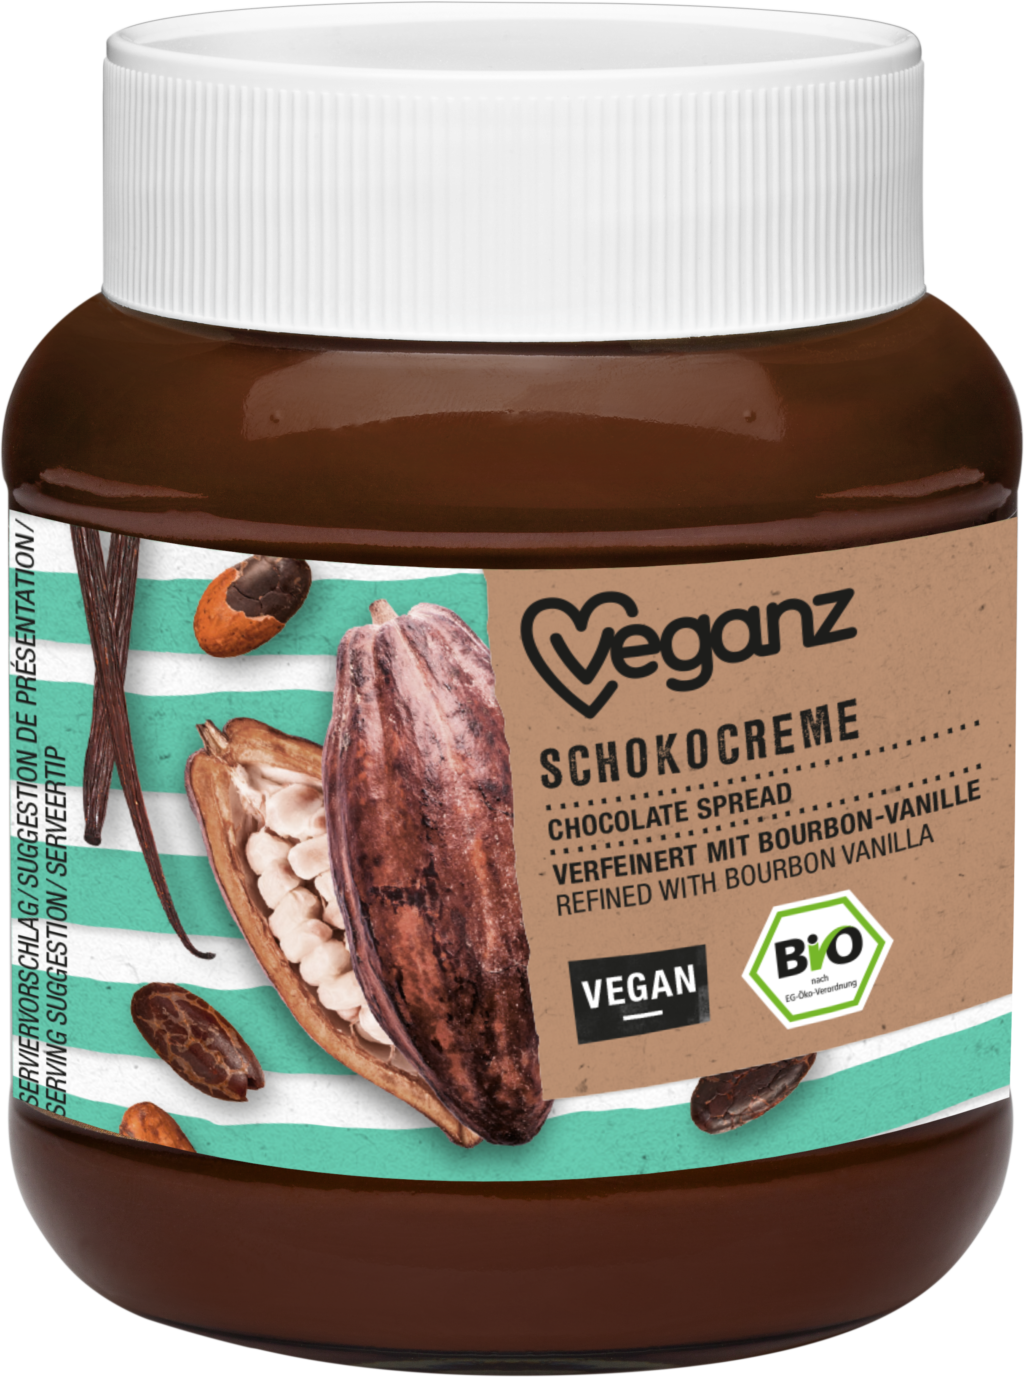 Bio Veganz Schokocreme – So schokoladig kann dein Morgen schmecken!